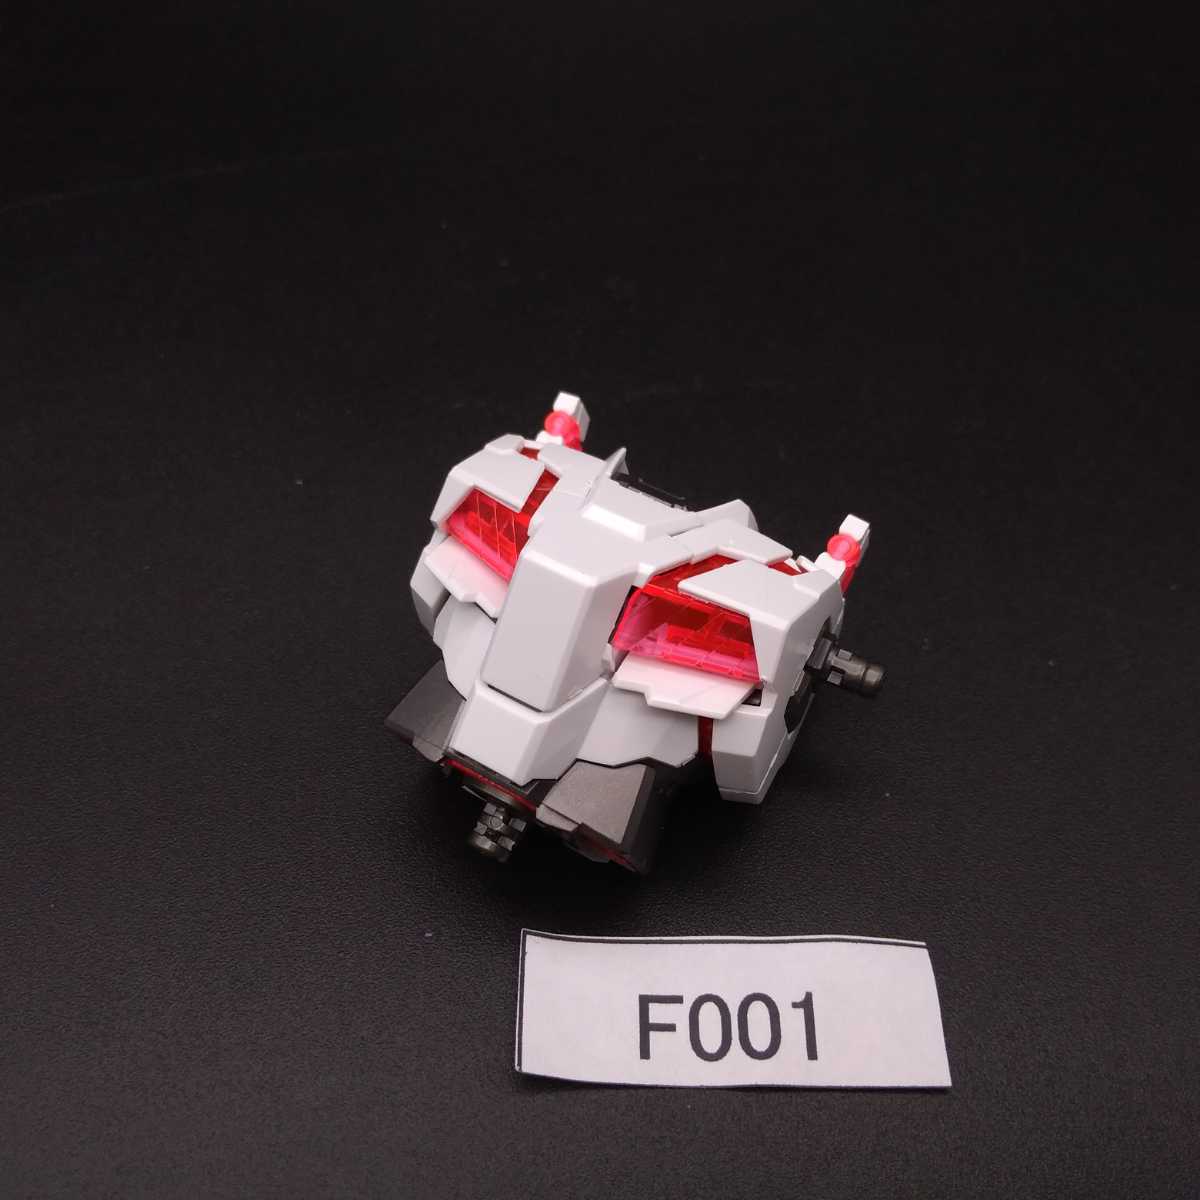 اشتريه الآن يمكن تجميعه F001 قطعة صندوق غير مجمعة ذات جودة عالية MG 1/100 Unicorn Gundam Gundam Gunpla منتج تالف ومفقود بدون لوحة منتج نهائي, شخصية, جاندام, منتج منتهي